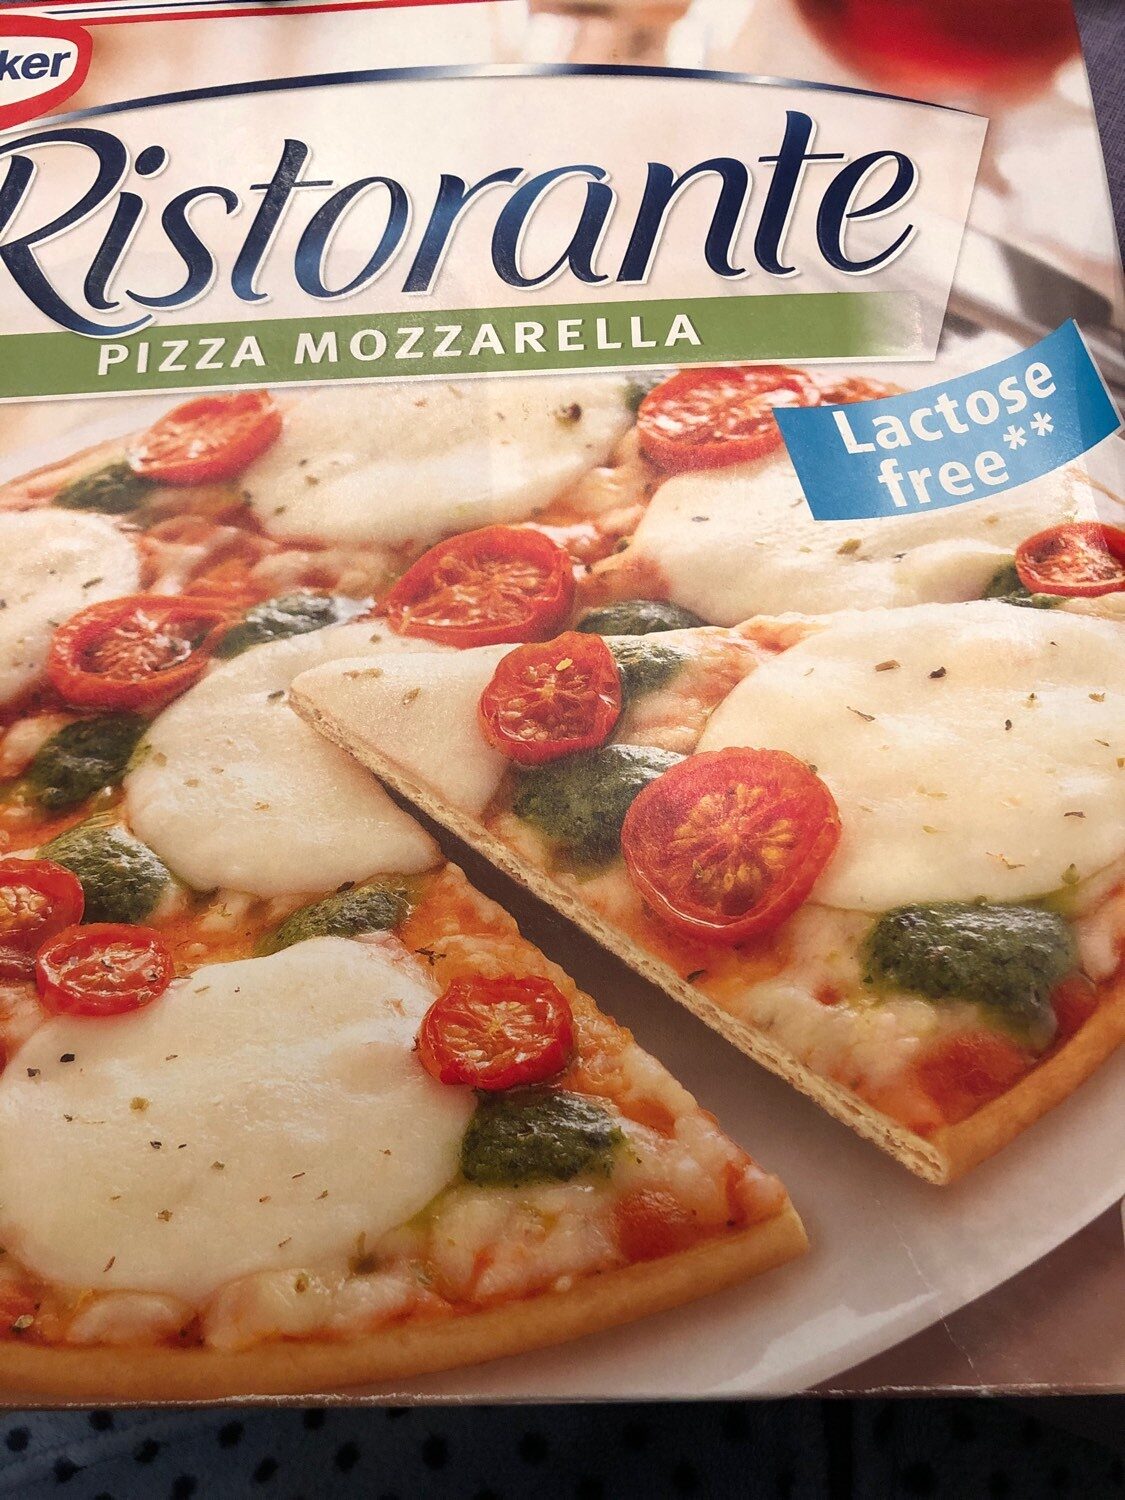 Ristorante pizza - Product - en